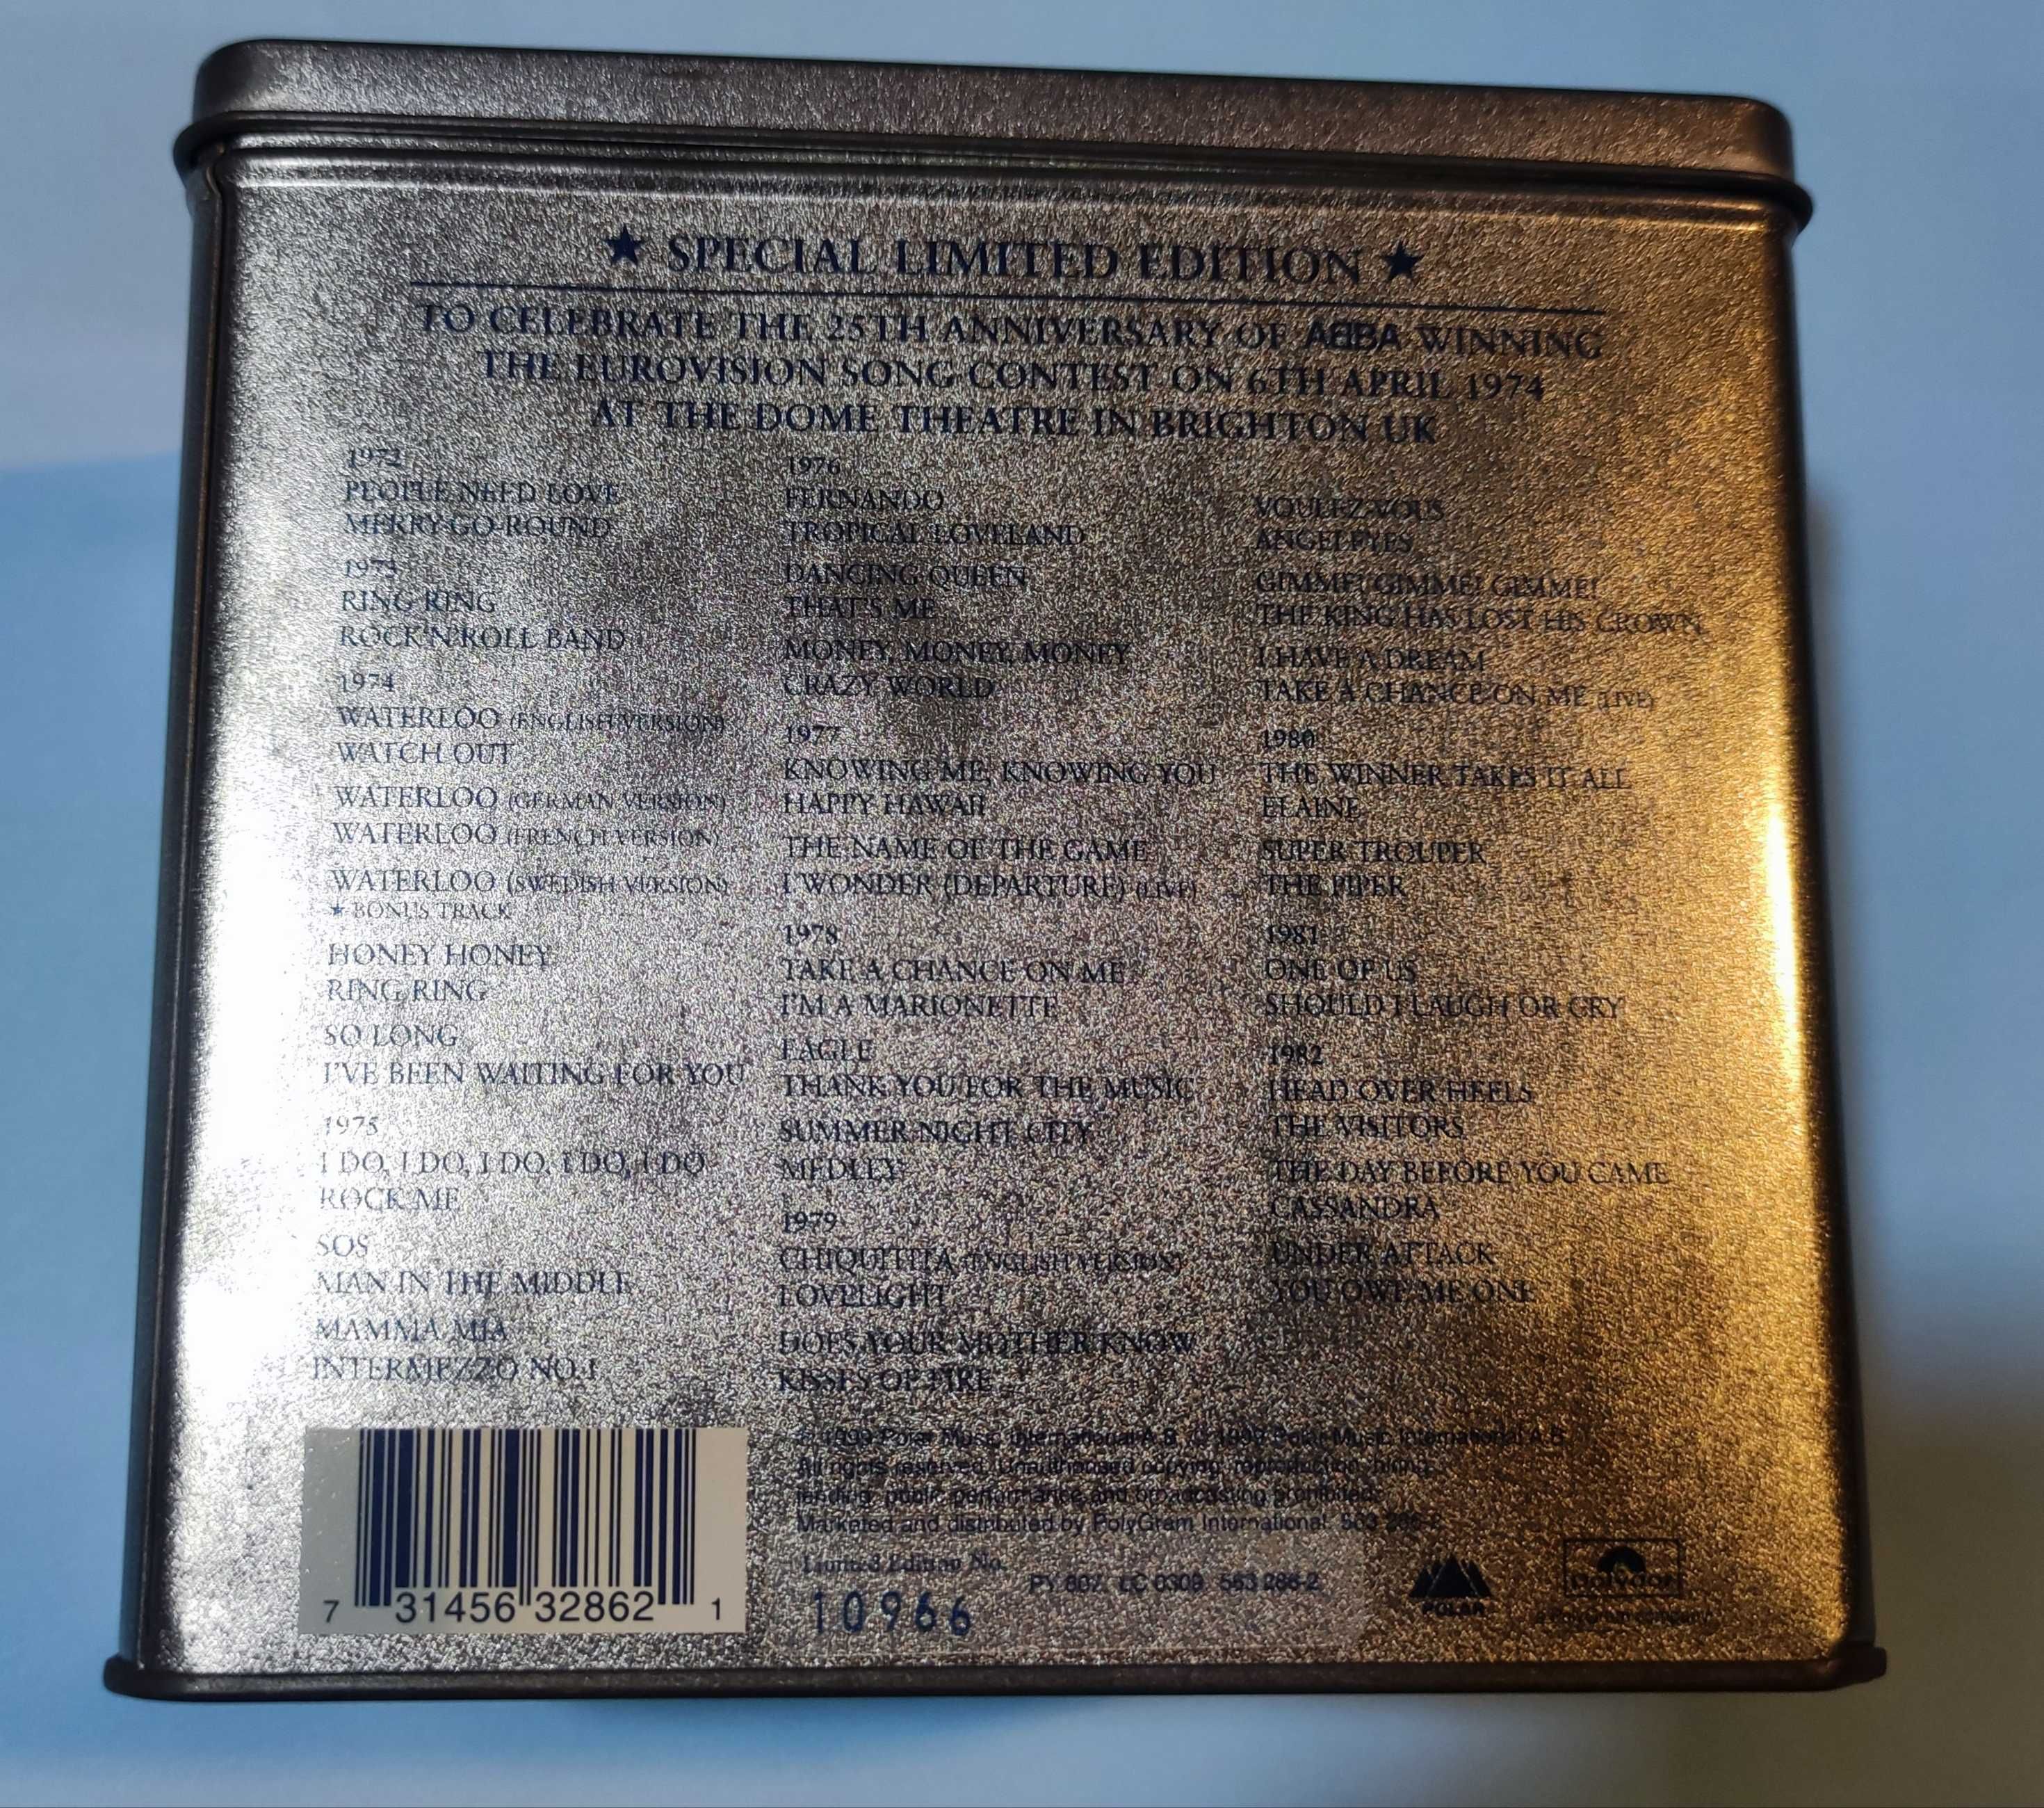 Caixa de lata com 28 CD's singles dos ABBA